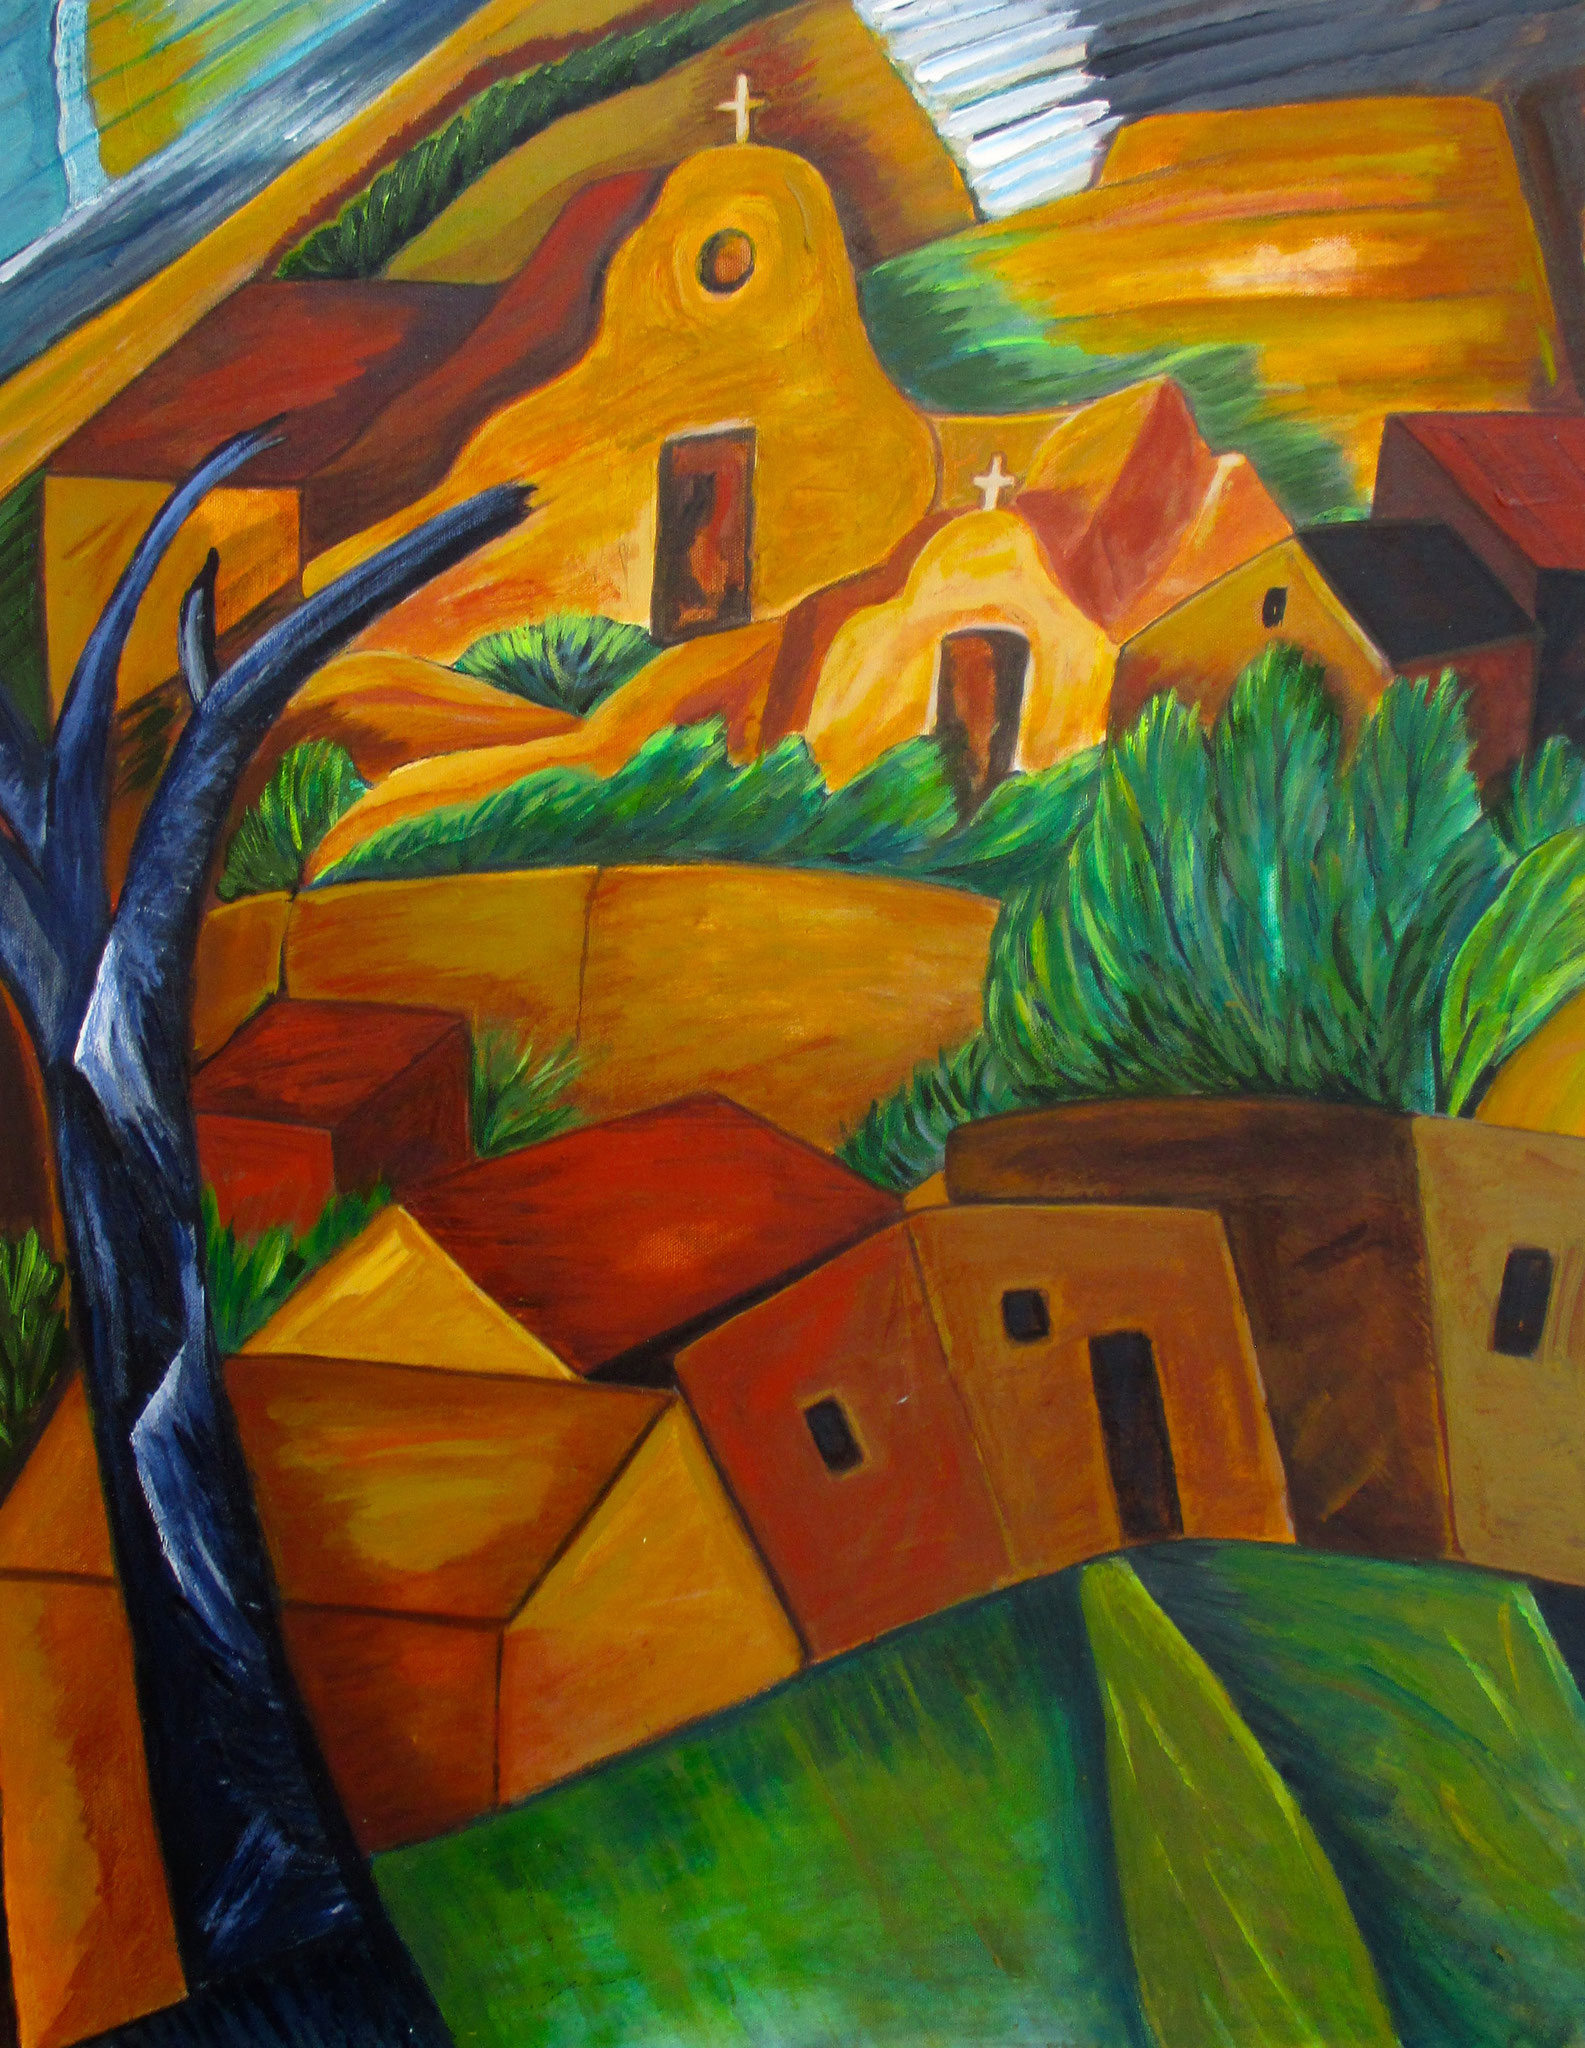 High Desert Village, oil on canvas, 22 x 28